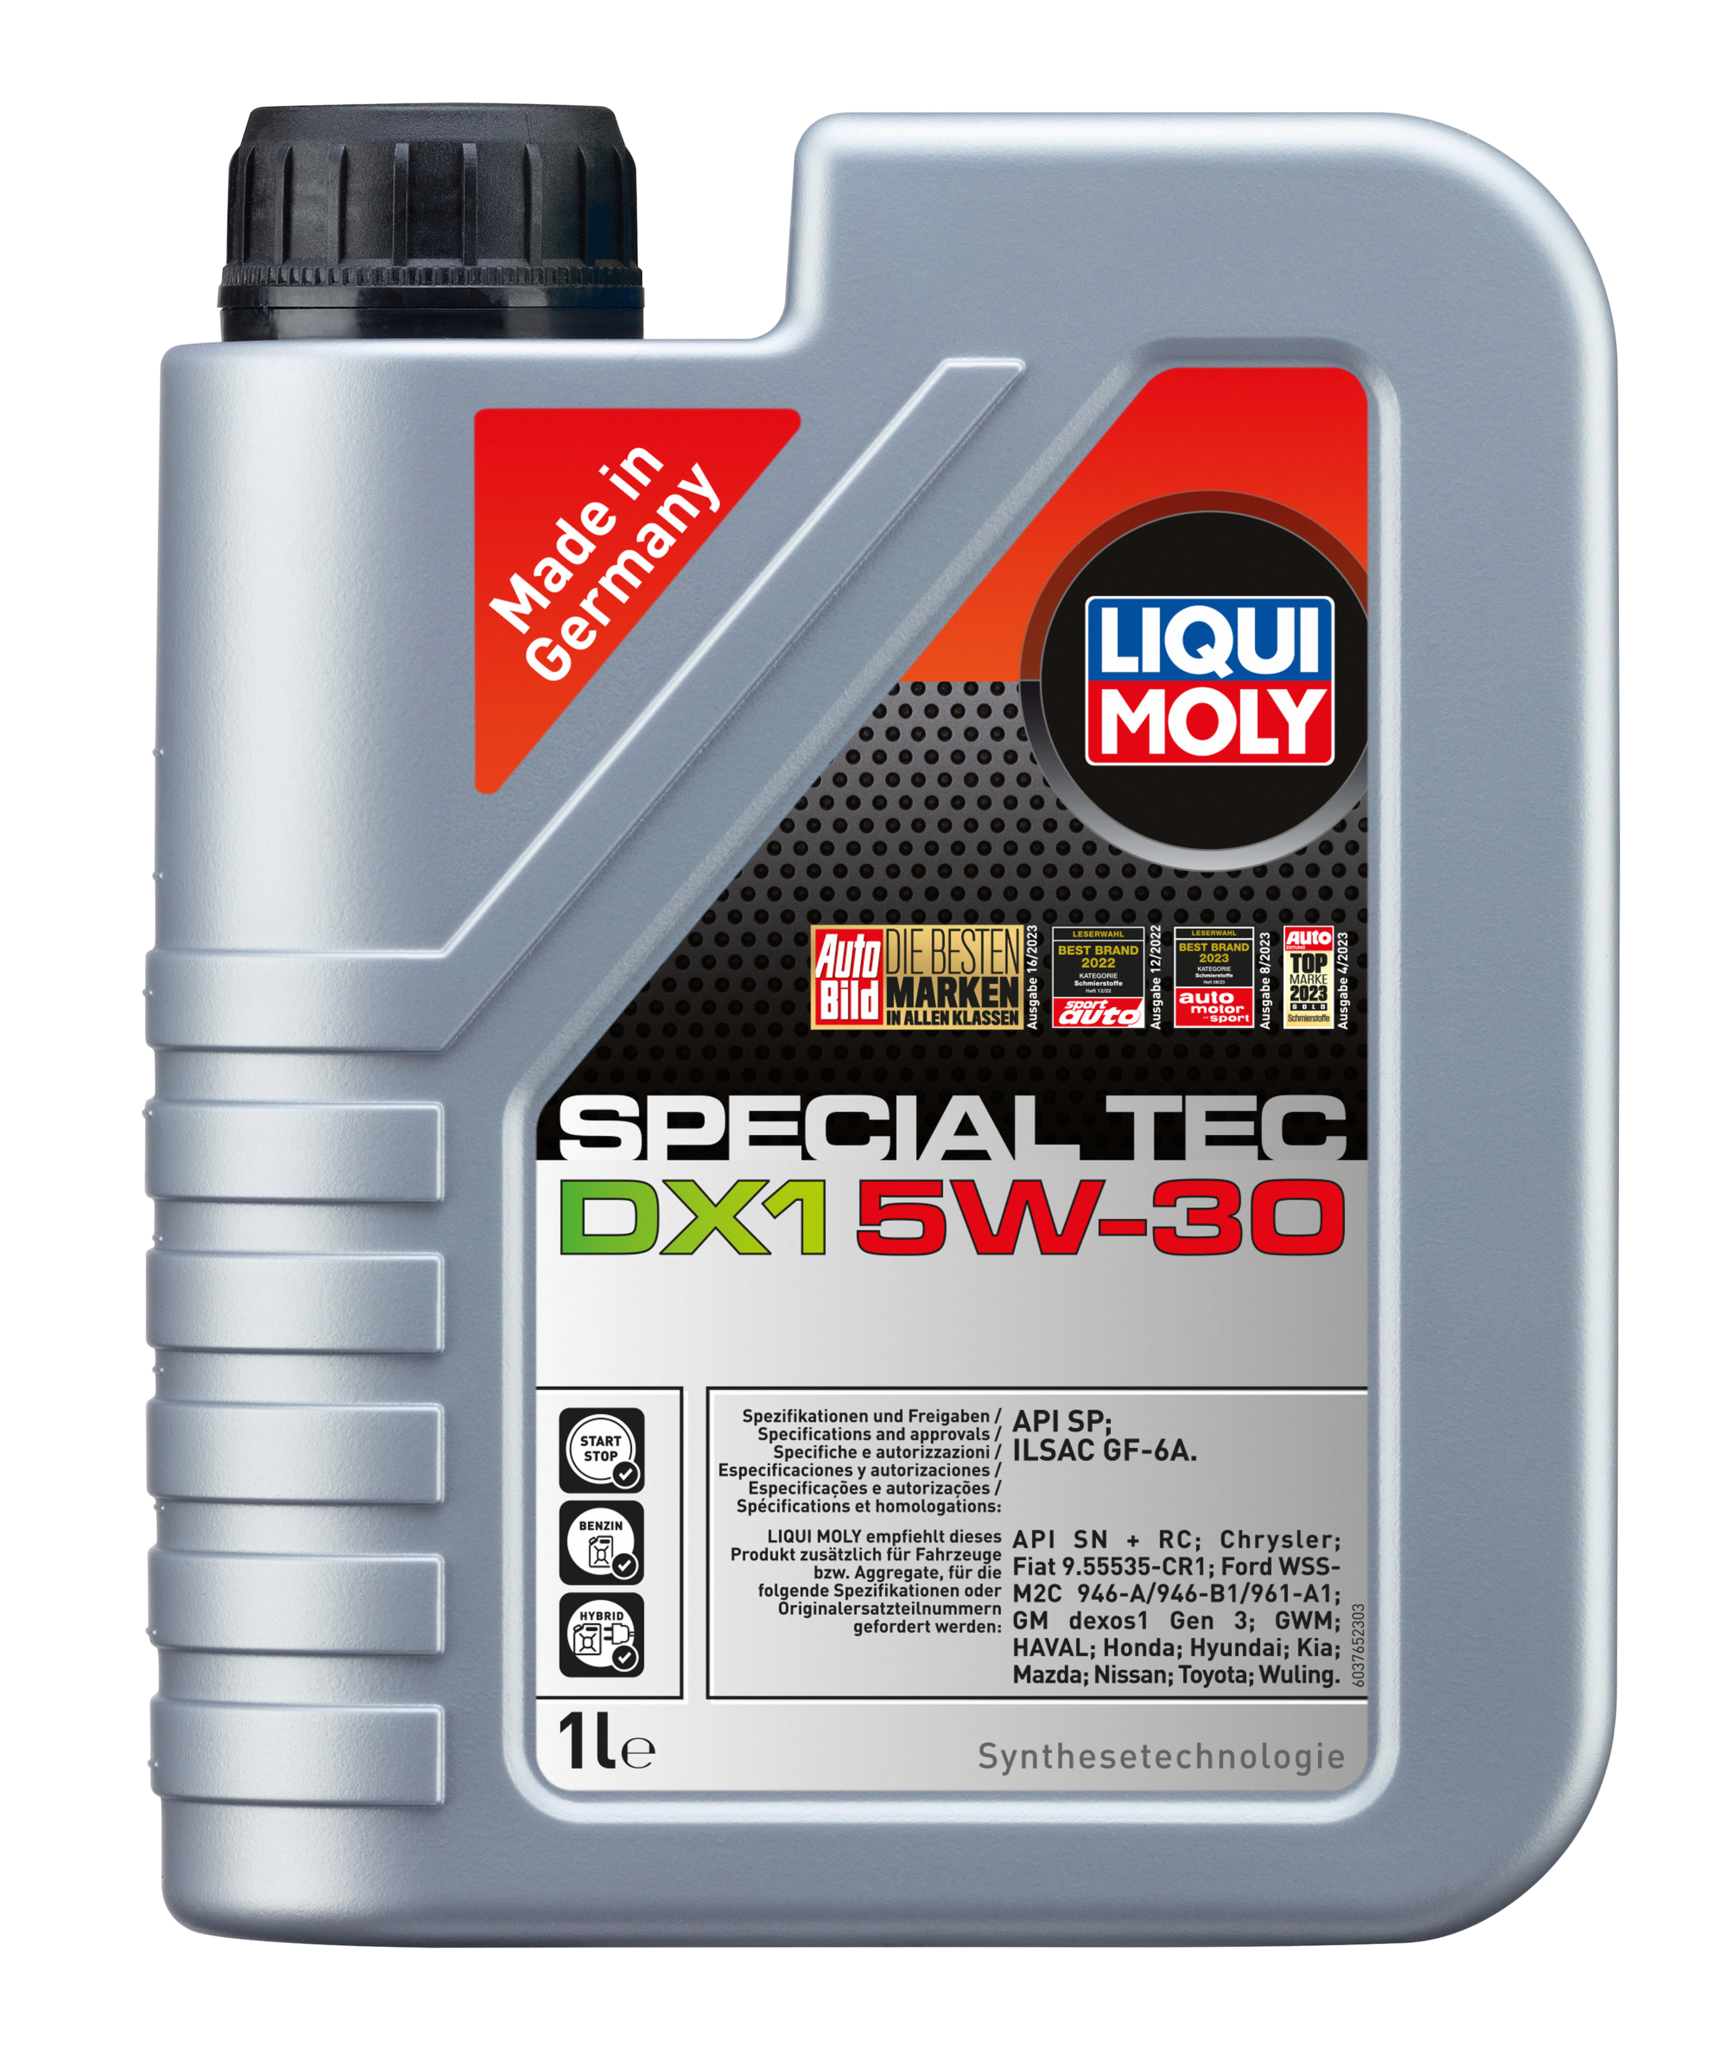 Моторное масло Liqui Moly Special Tec DX1 5W30 hc-синтетическое 1л